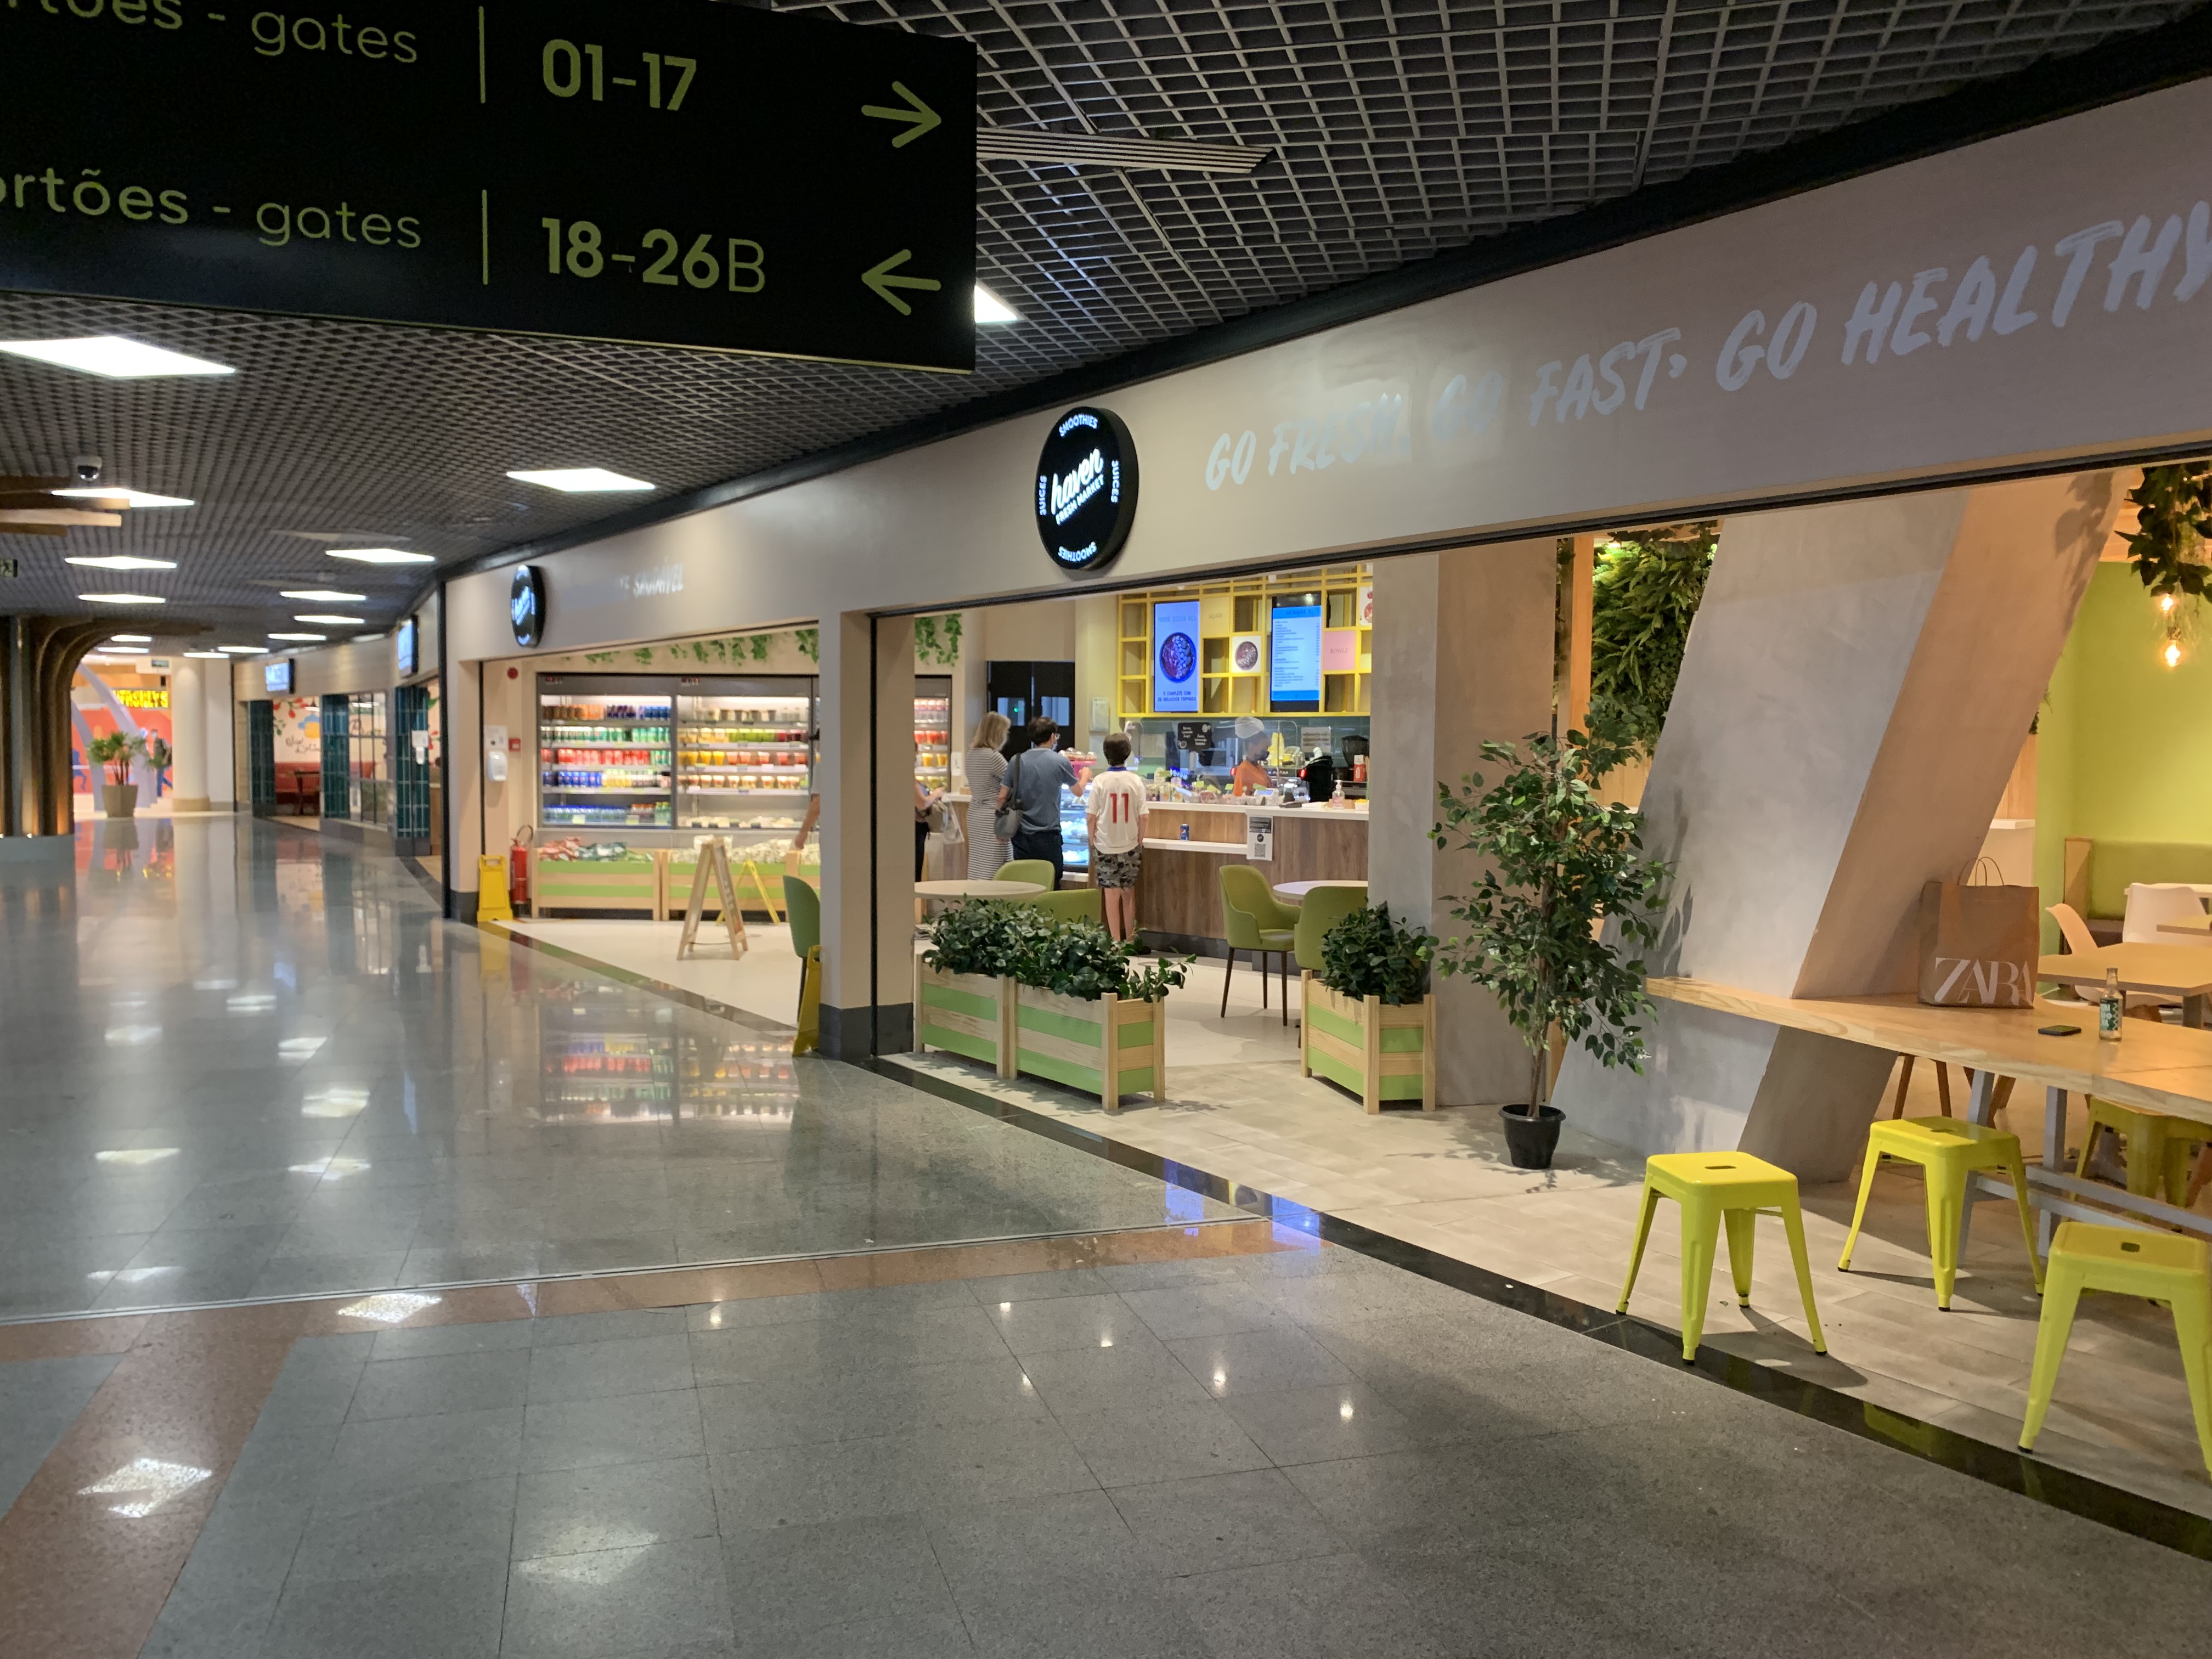 Subway - Aeroporto - Aeroporto de Salvador